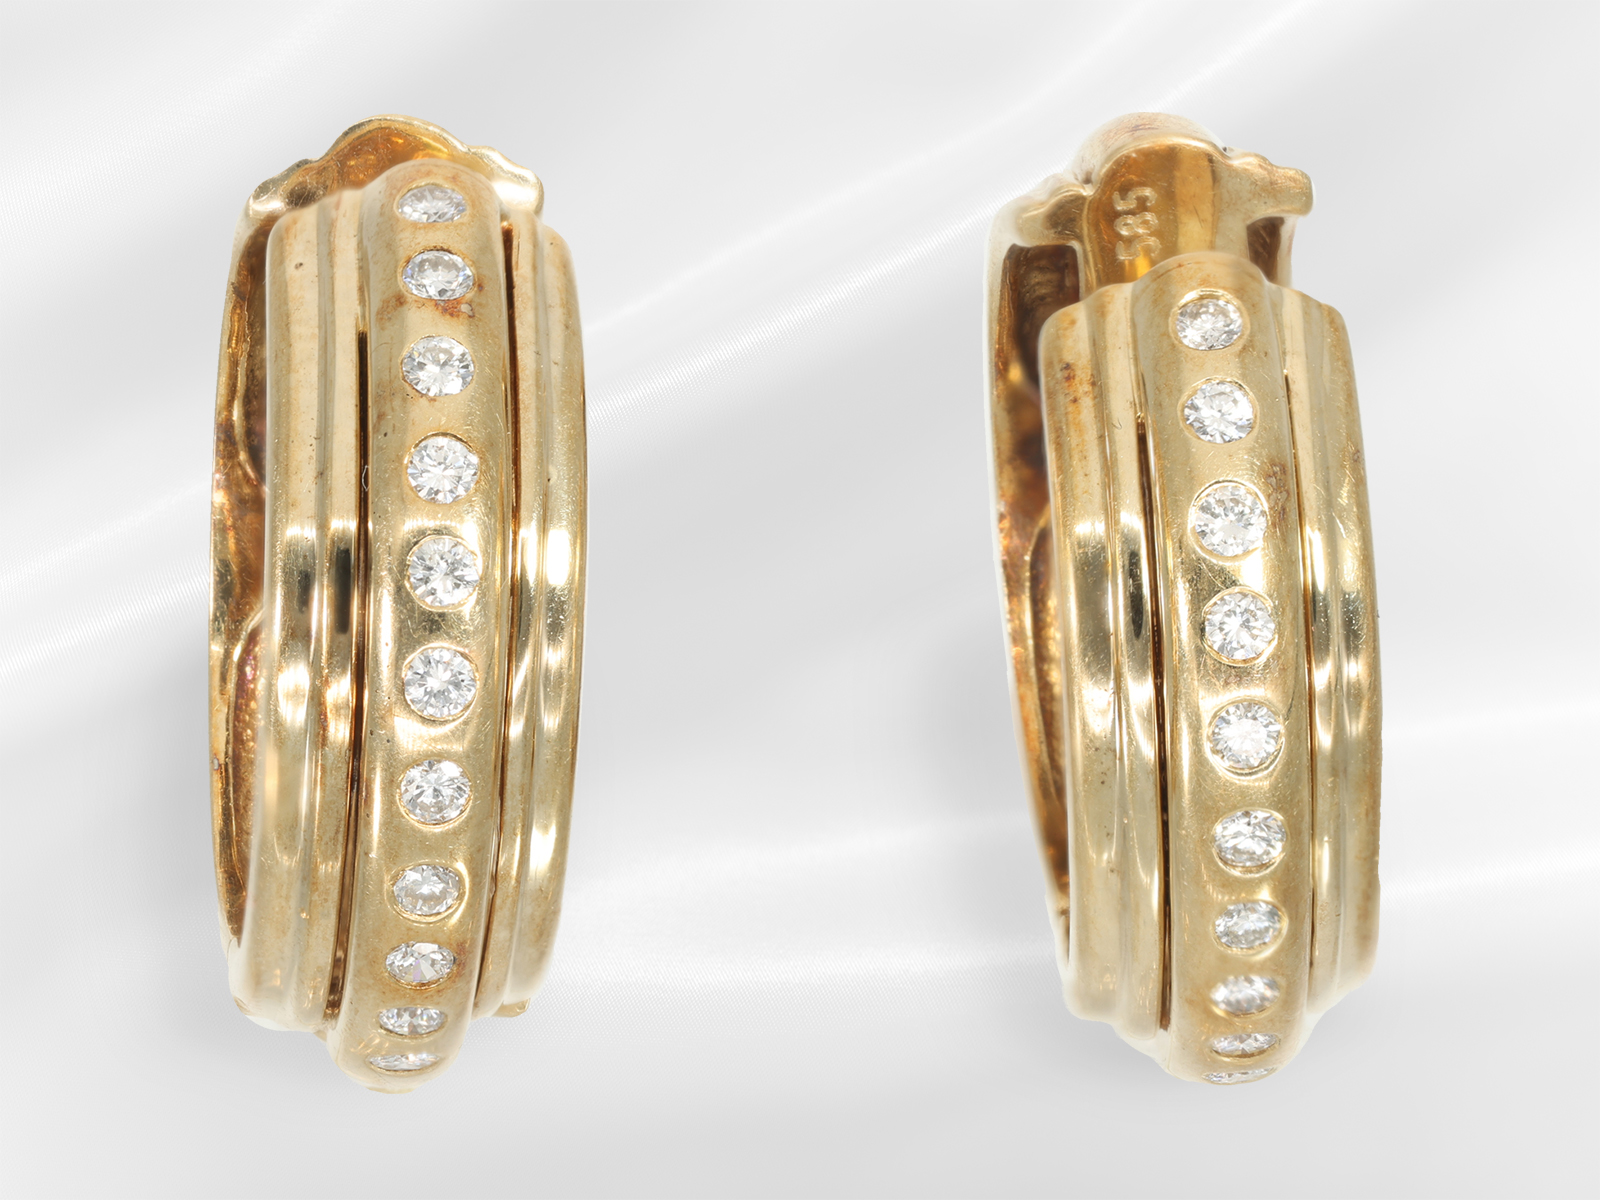 Earrings: decorative brilliant-cut diamond hoop earrings in 14K yellow gold, brilliant-cut diamonds 